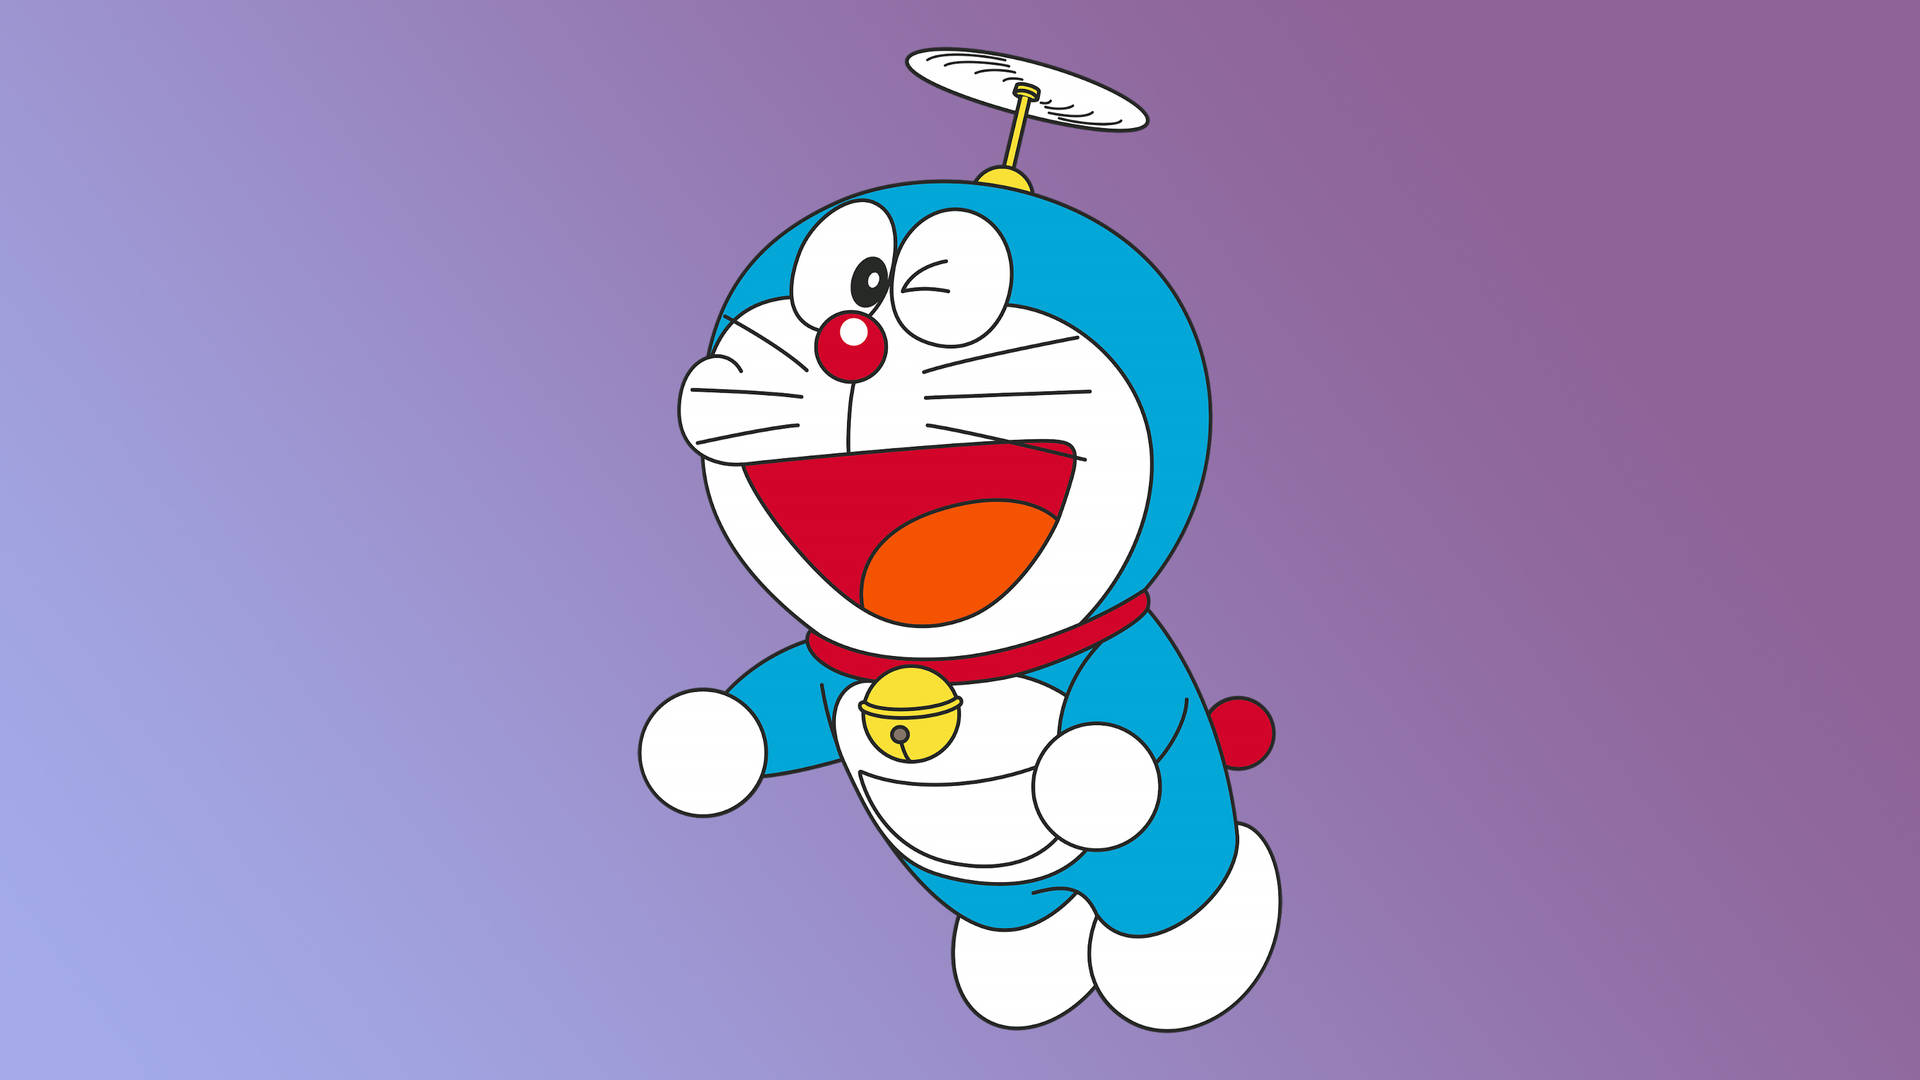 Tải ngay những hình nền Doraemon sắc nét và độ phân giải cao với bộ sưu tập Doraemon 4k Wallpaper Downloads. Bạn sẽ được chiêm ngưỡng những hình ảnh tuyệt đẹp và cập nhật những bức hình mới nhất về chú mèo máy Doremon.